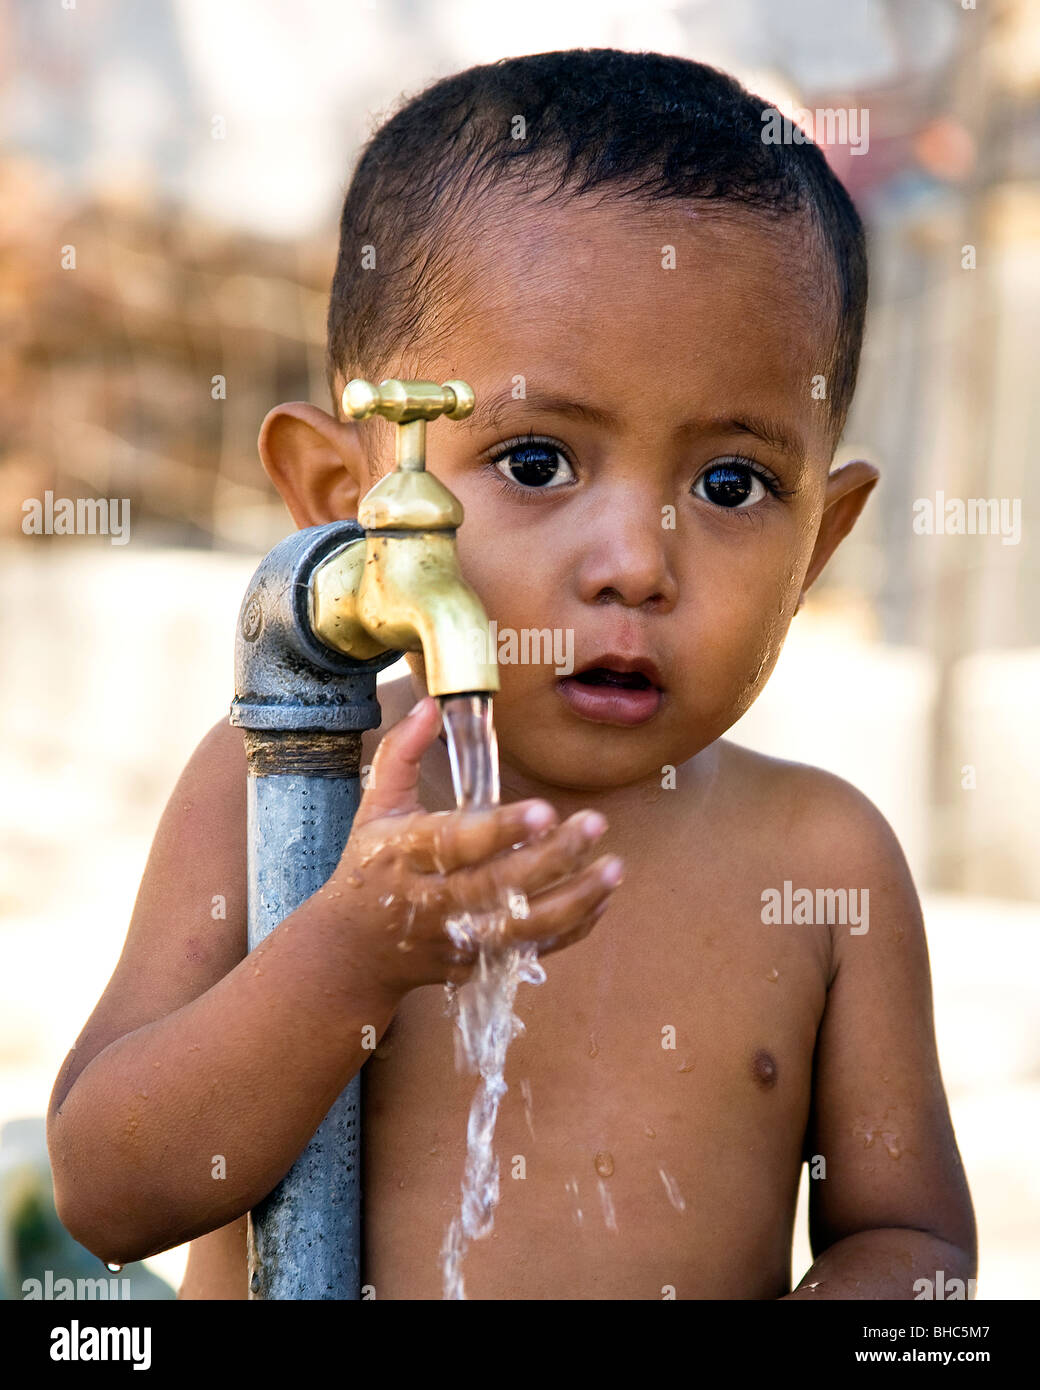 Bébé garçon nouvellement installé à l'aide de l'eau du robinet à un IDP camp de personnes déplacées à Dili au Timor oriental Banque D'Images